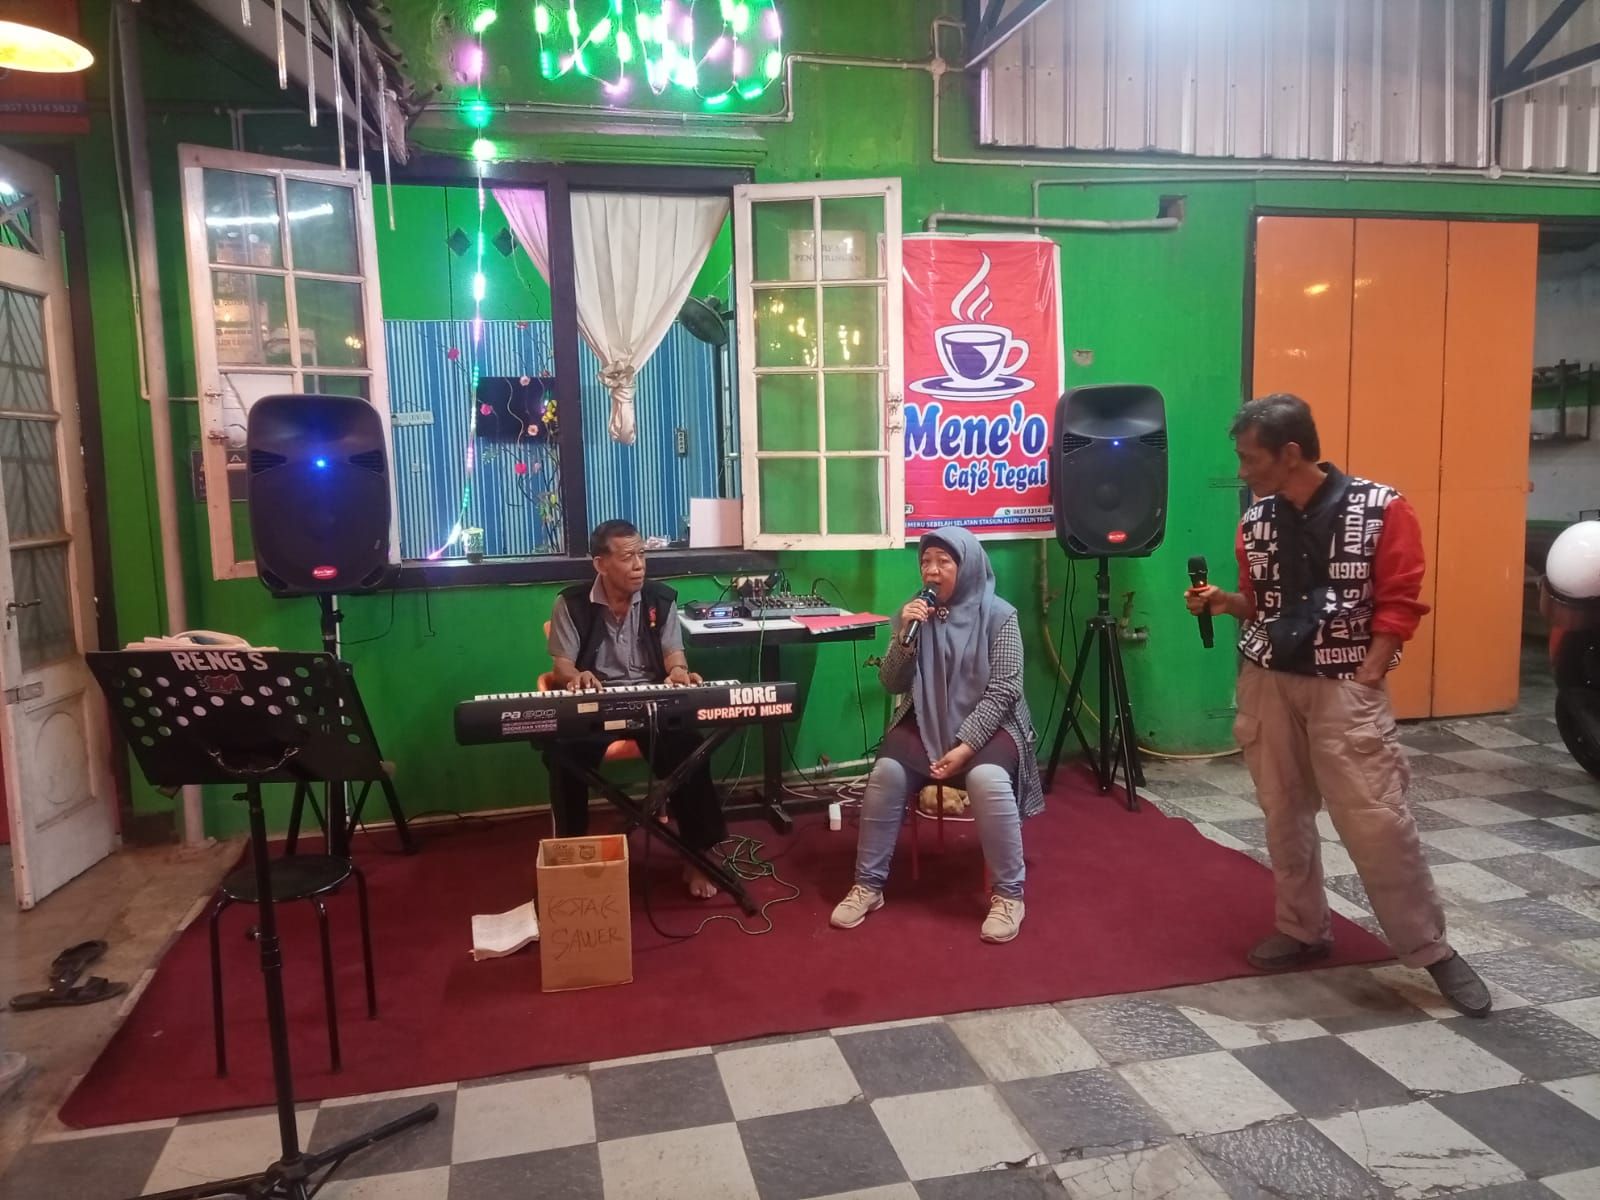 Pengunjung Meneo Cafe Tegal sedang karaoke